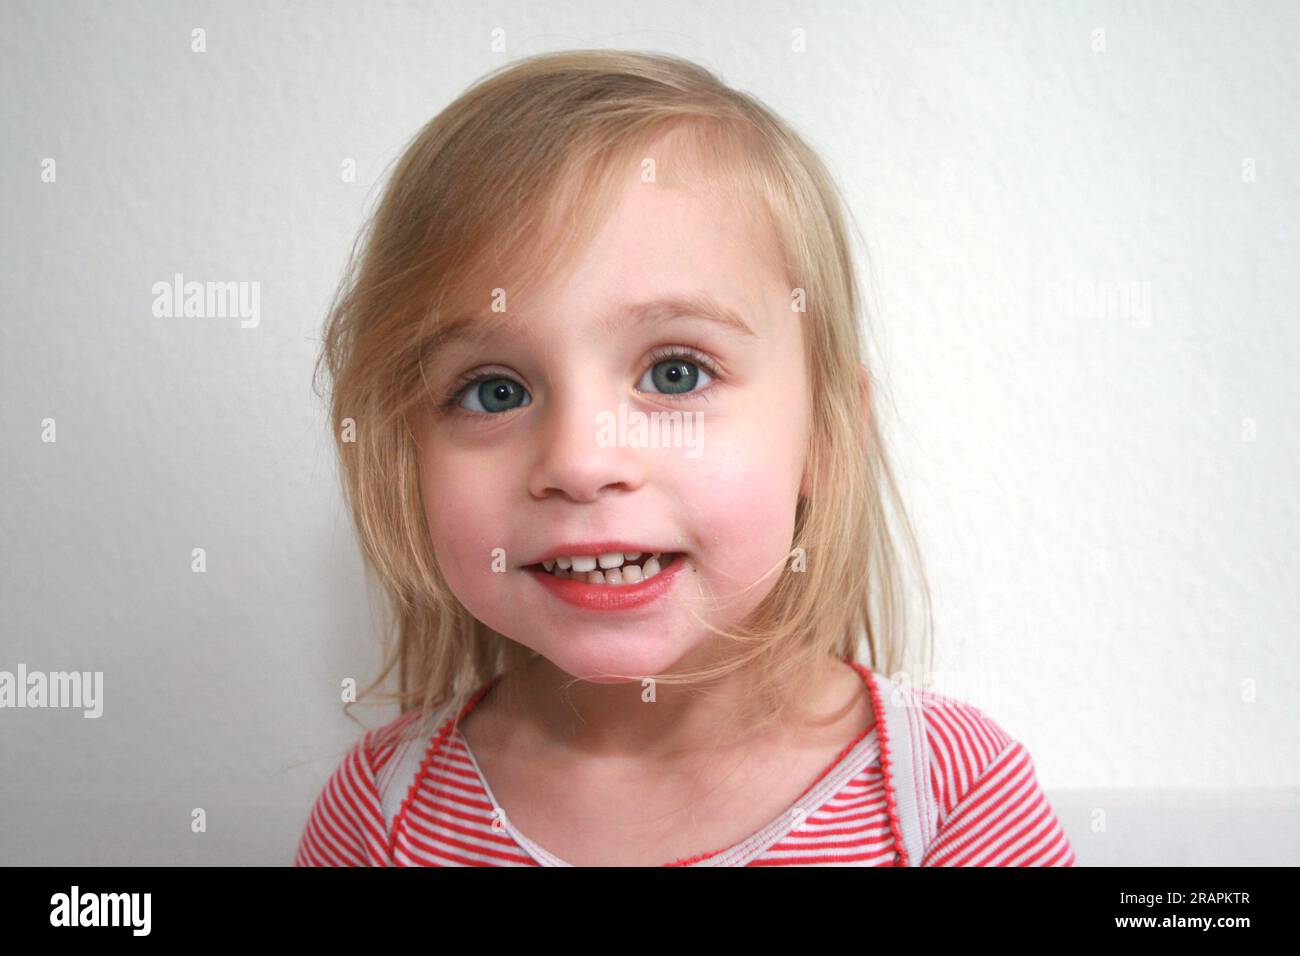 Lustige Porträtaufnahmen von drei Jahren alten Kindern in der Kamera Stockfoto